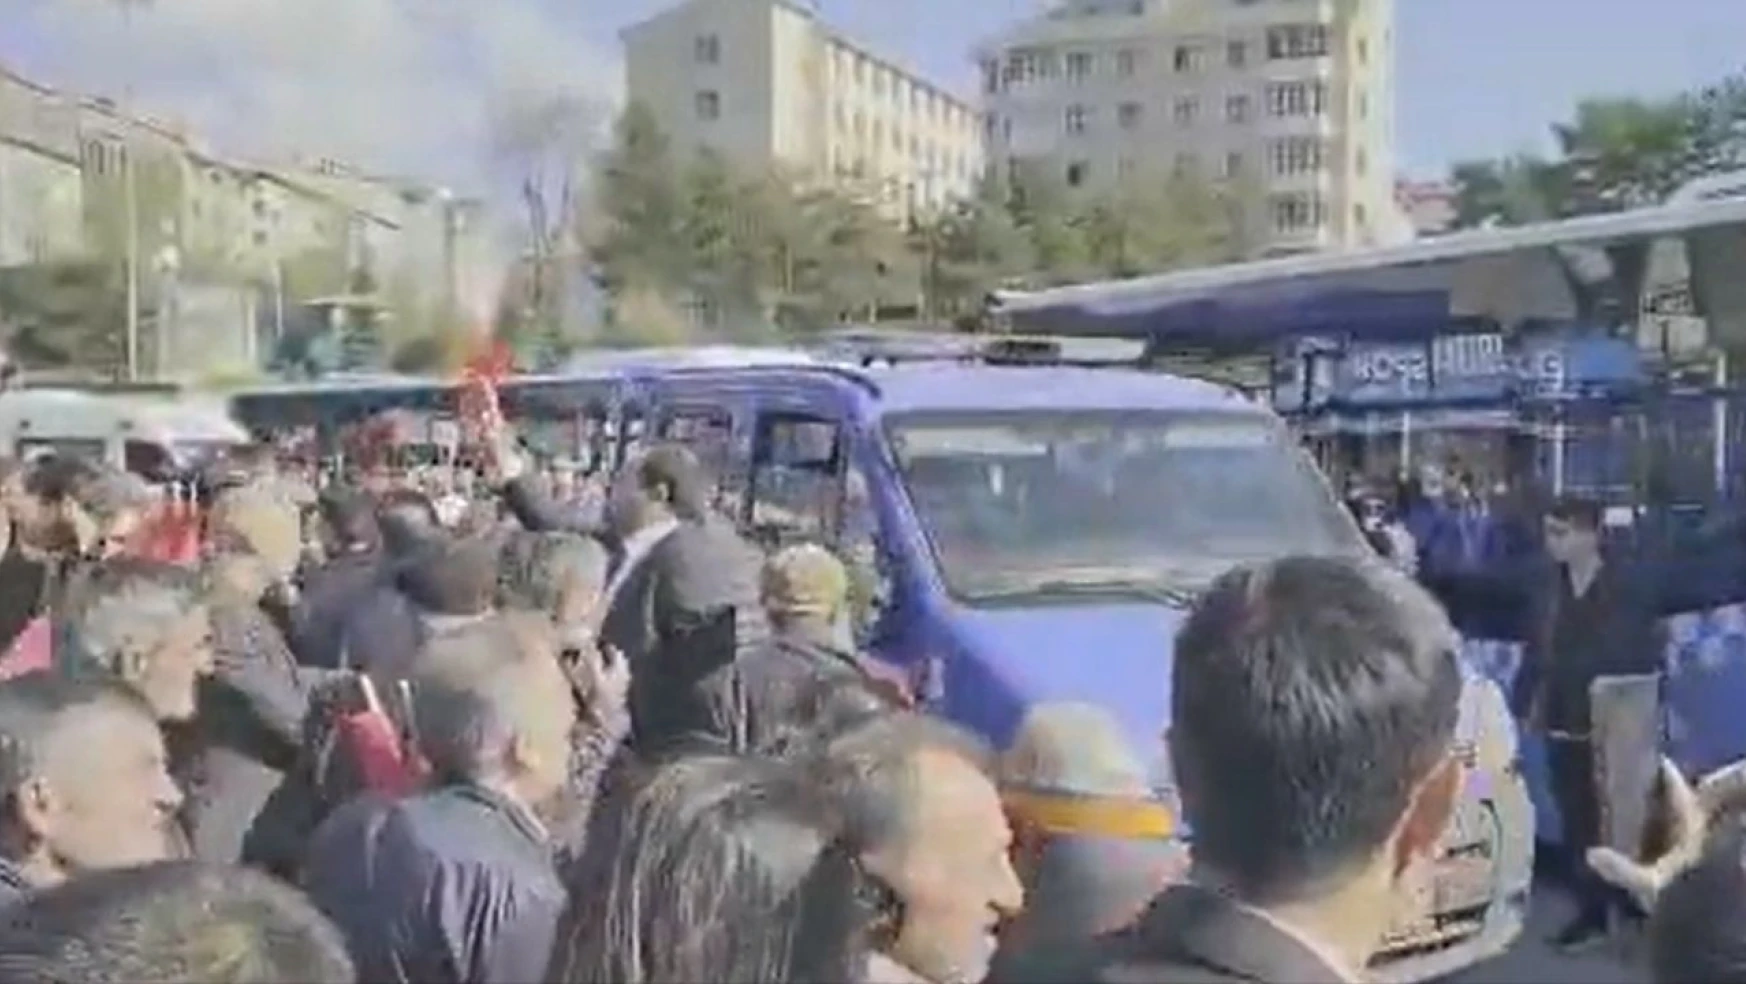 Erzurum Büyükşehir Belediyesi tepki çeken araçlarını kaldırmaya başladı